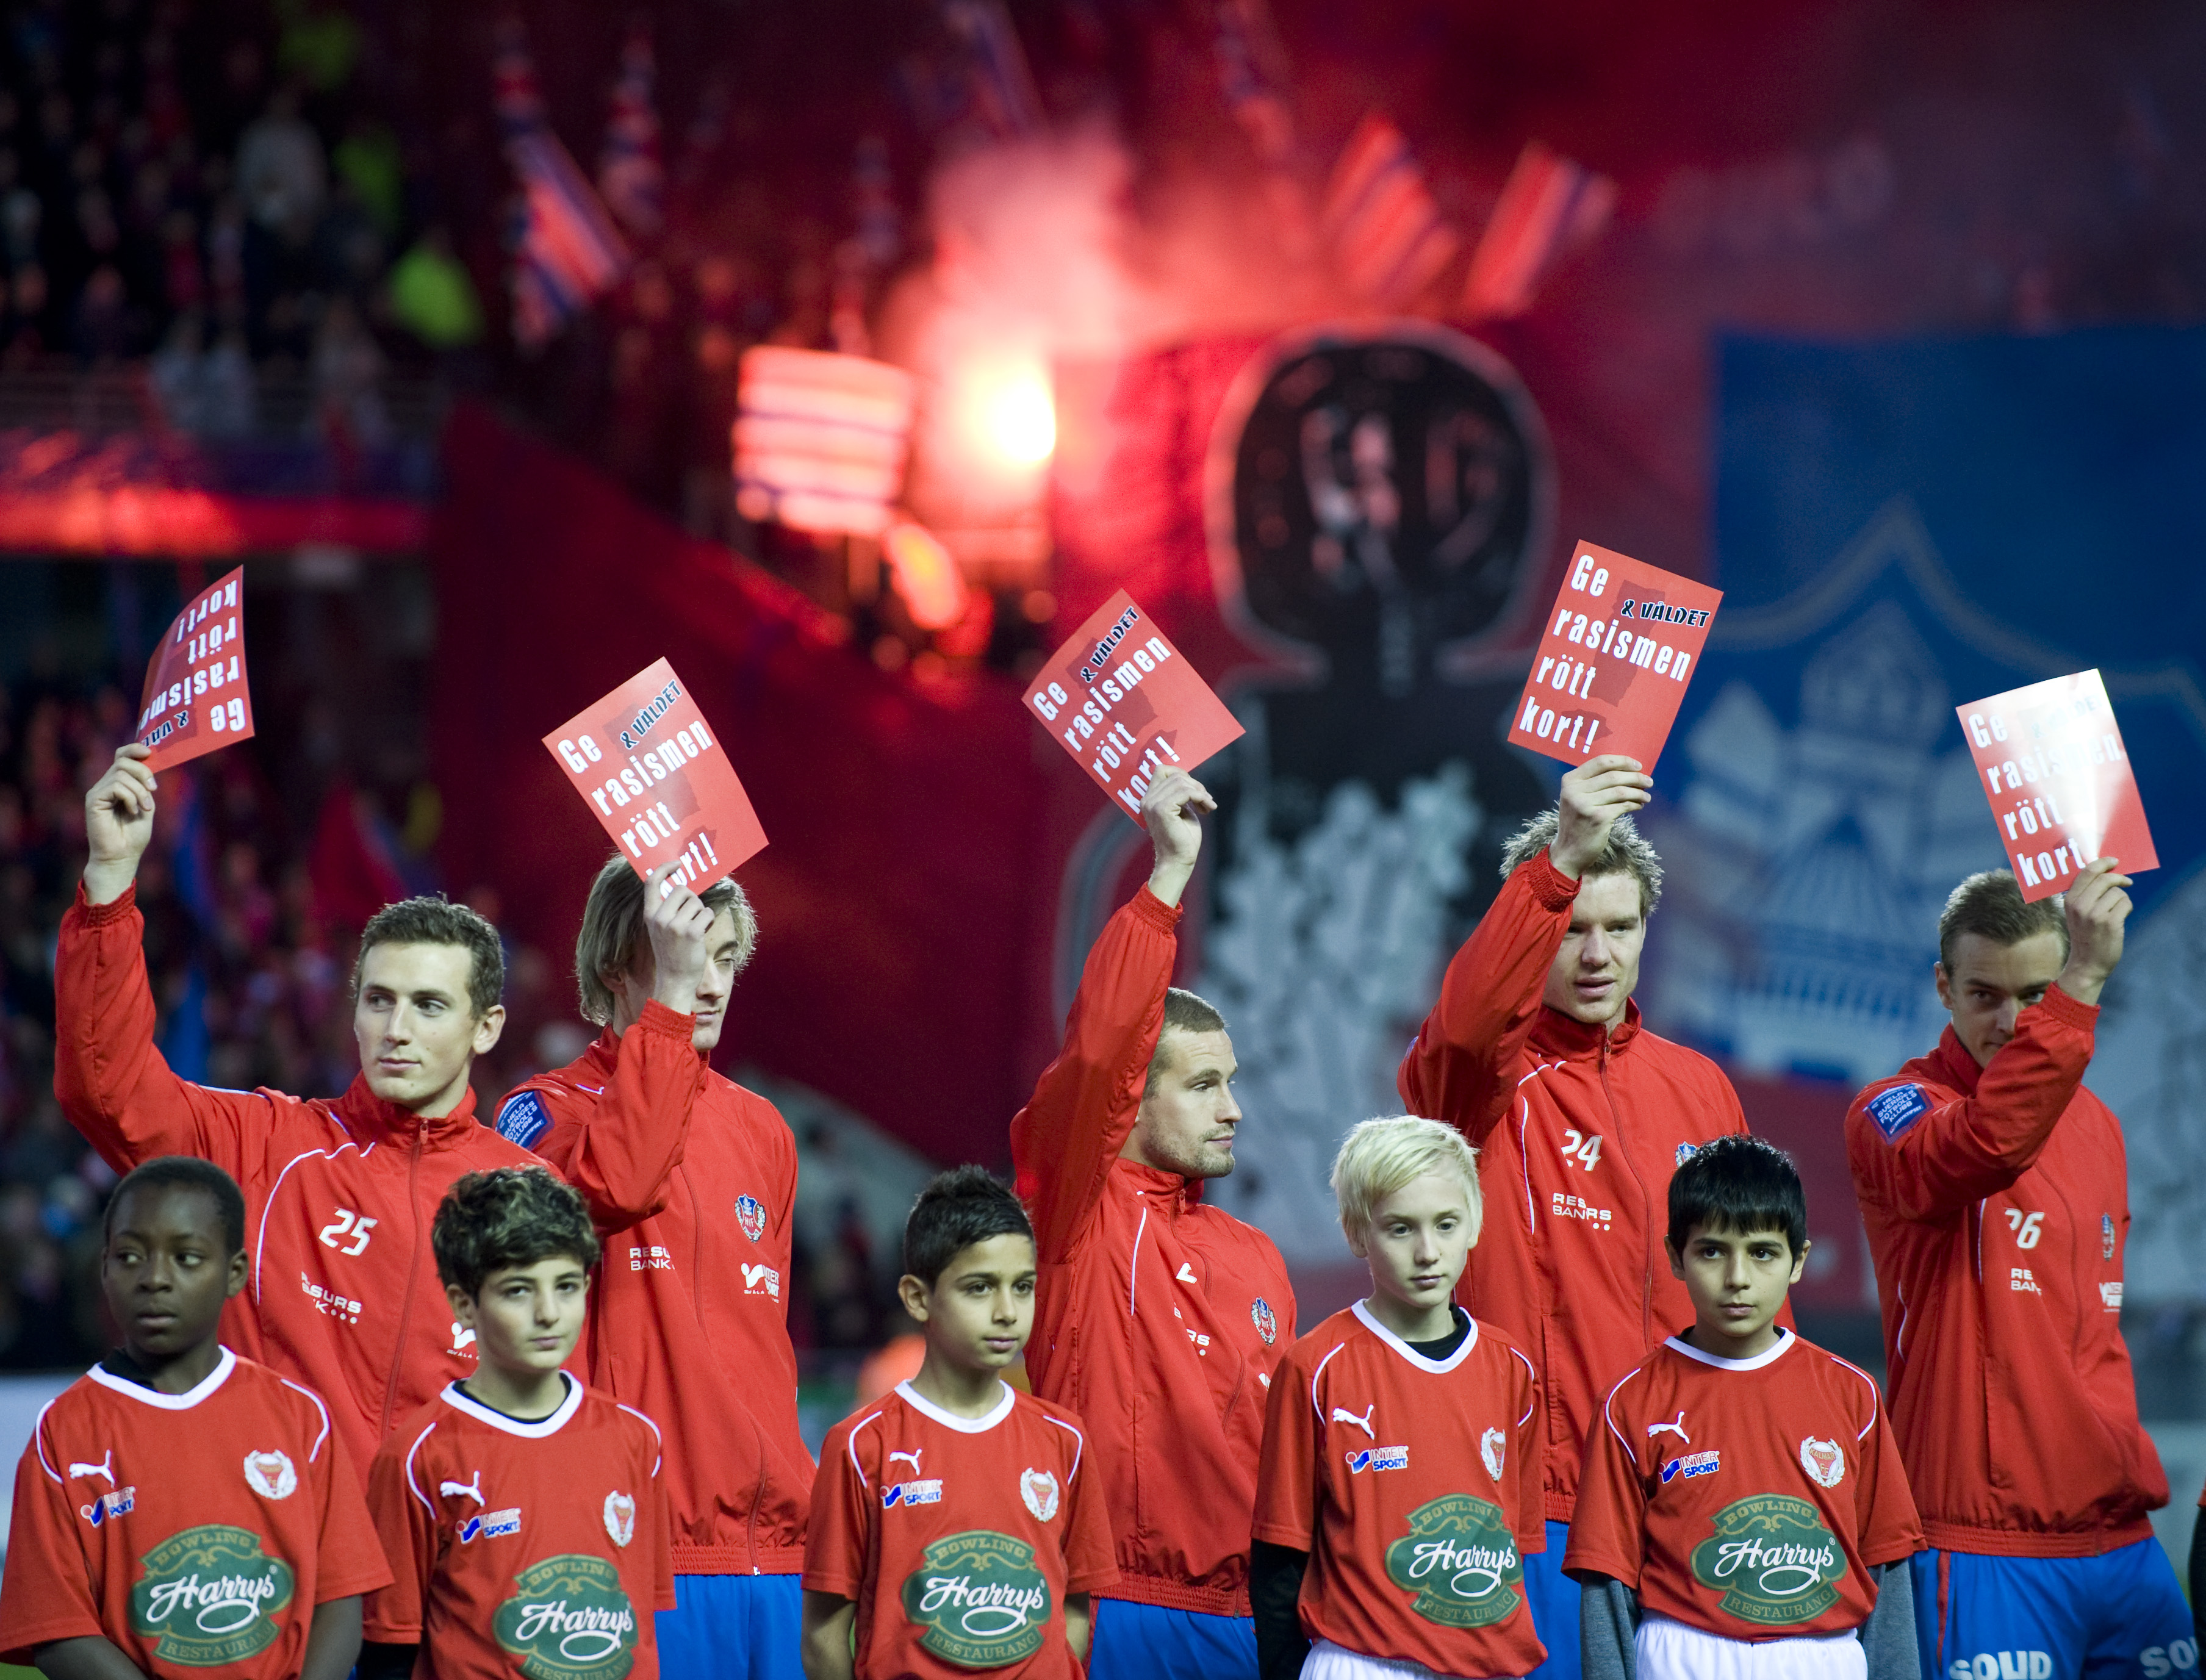 Fotbollen har länge haft problem med rasism. Här håller Helsingborgs trupp upp röda kort mot rasismen inför ett derby mot MFF.